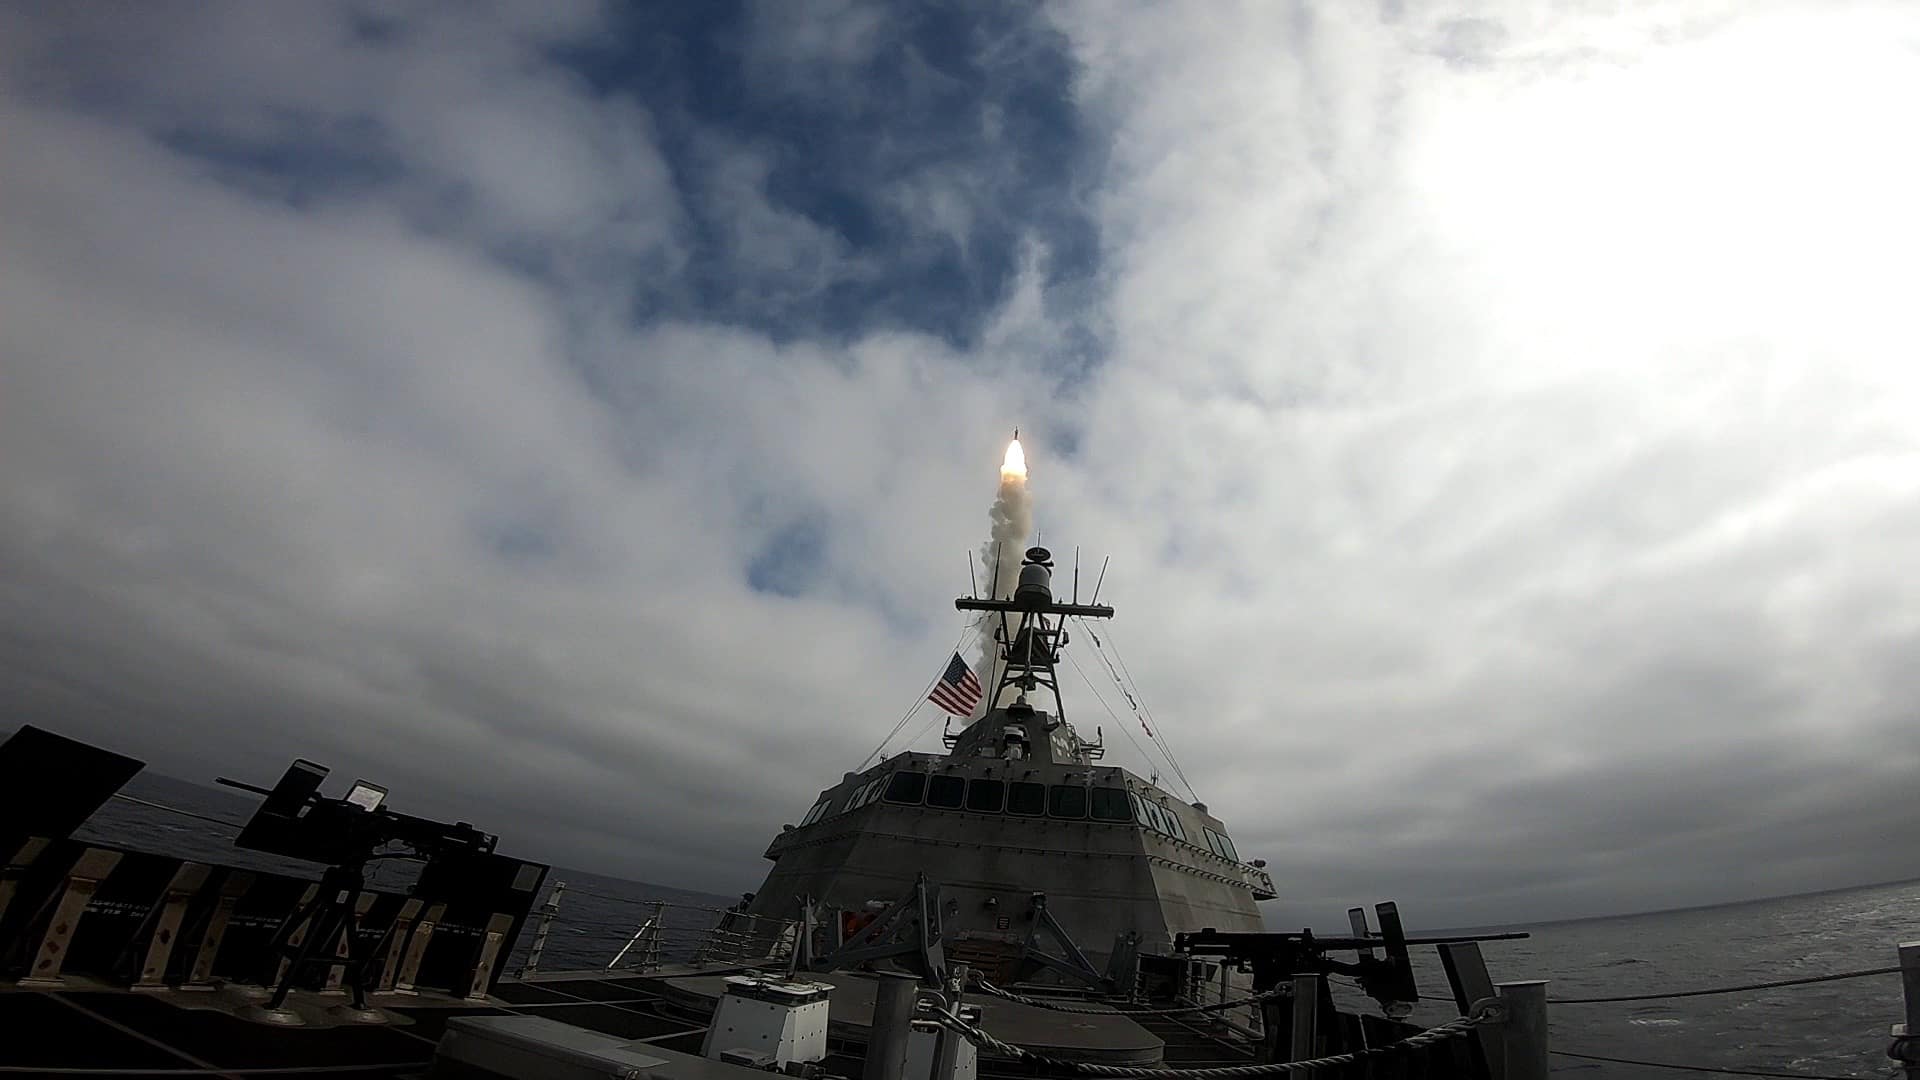 La nave da combattimento litoranea statunitense USS Savannah ha lanciato per la prima volta il missile intercettore Standard Missile 6, in grado di attaccare obiettivi aerei e terrestri.